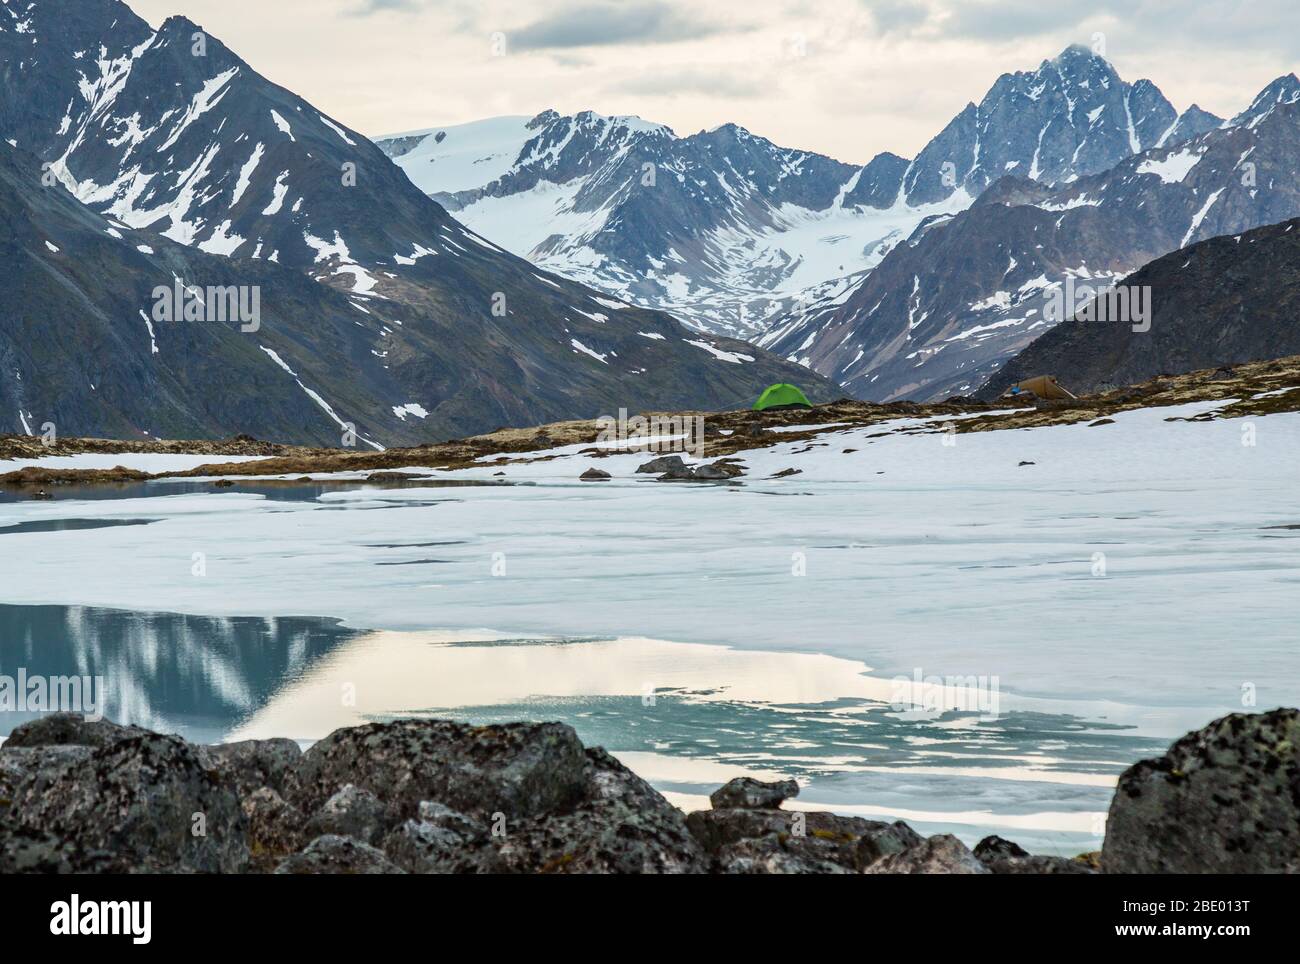 Piccola tenda verde per una persona sopra il lago prevalentemente ghiacciato nella natura selvaggia dell'Alaska. Oltre il campo ci sono ghiacciai innevati e cime rocciose. Foto Stock